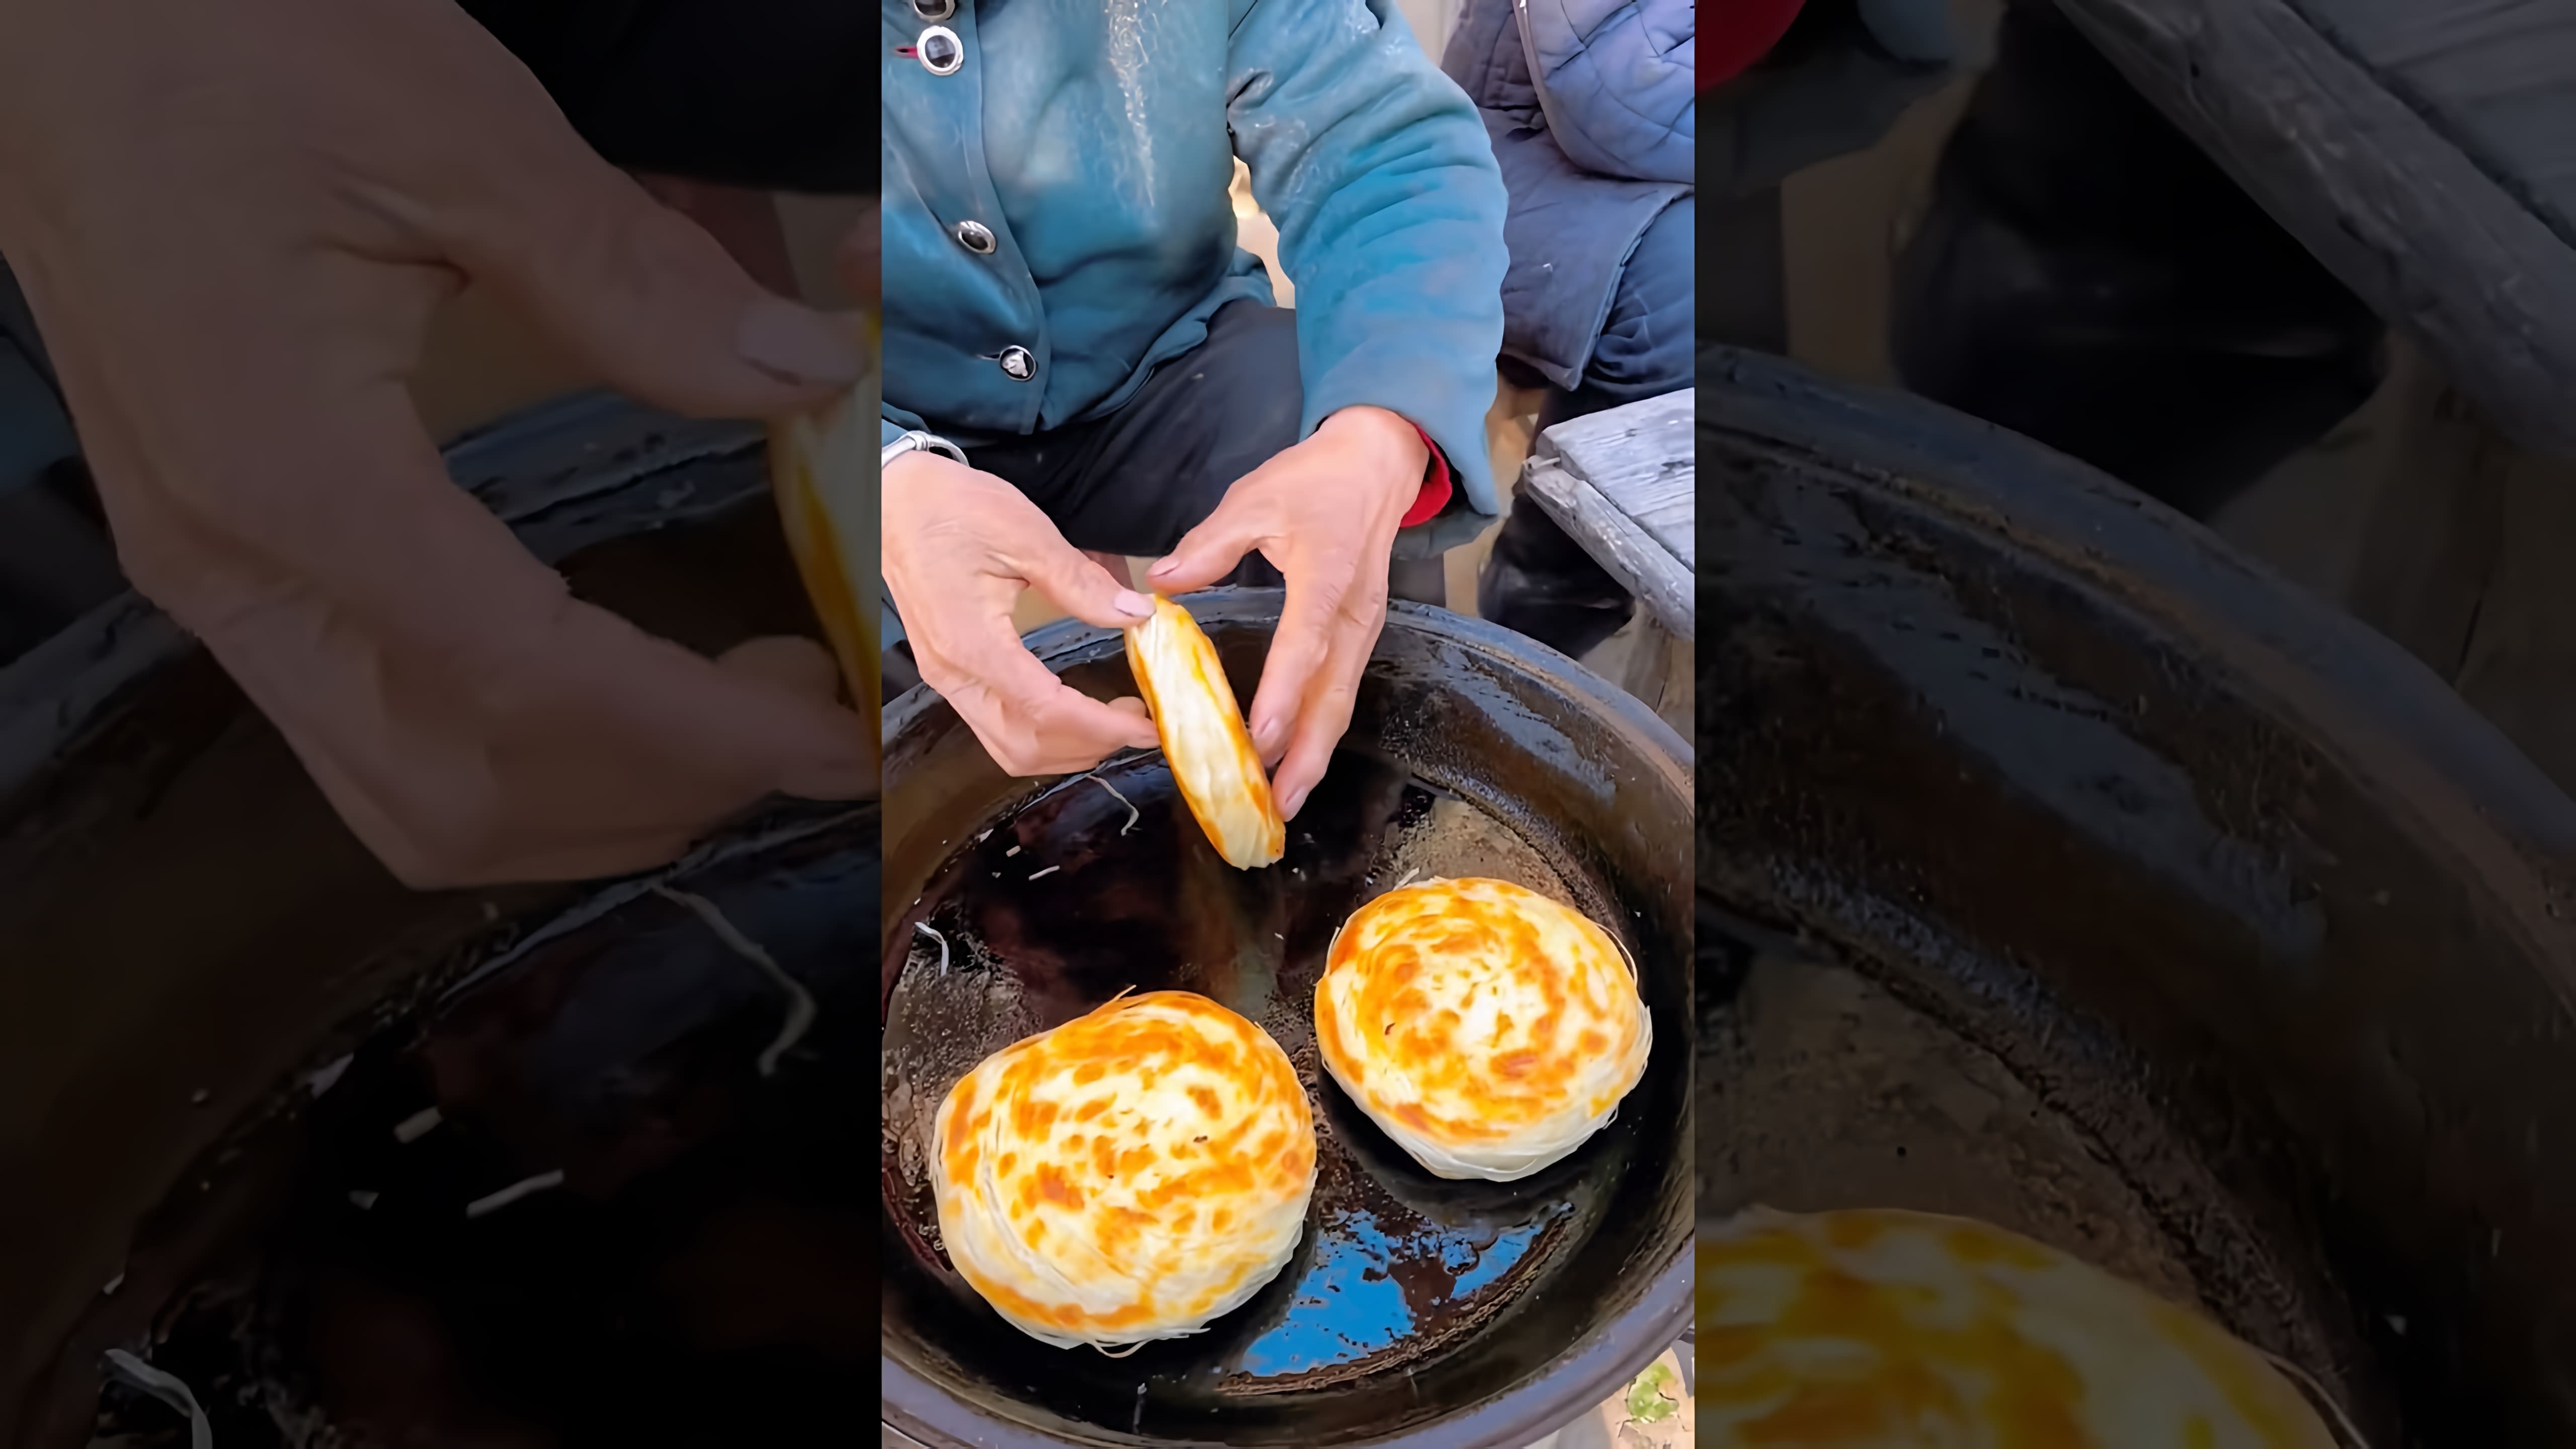 "Китайский бургер Теппаньяки с капустой" - это видео-ролик, который демонстрирует процесс приготовления вкусного и оригинального блюда